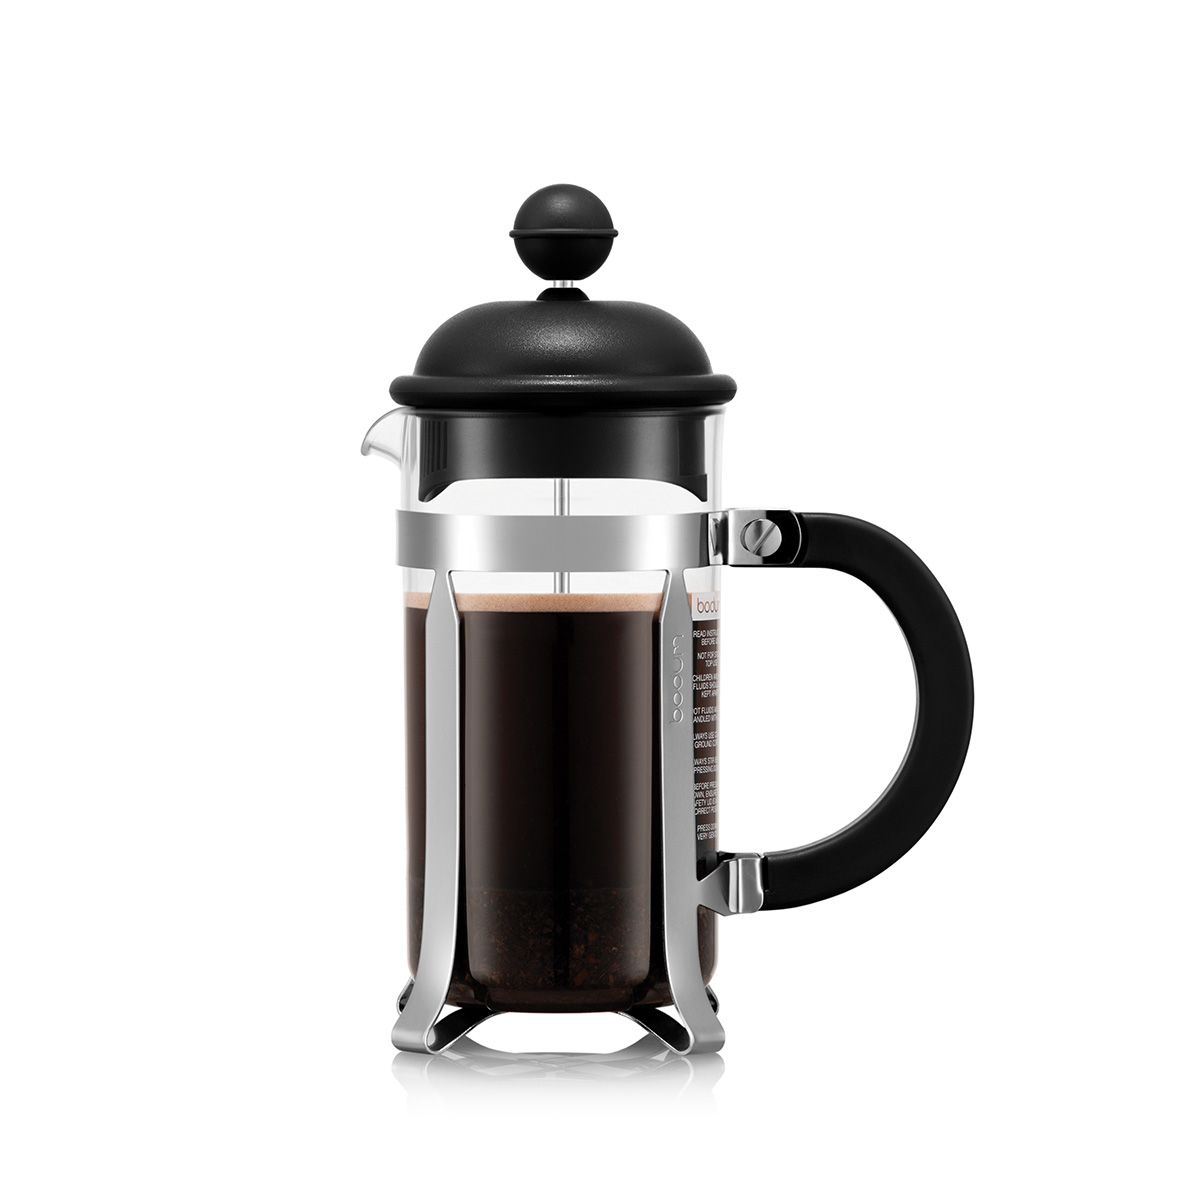 ボダム bodumフレンチプレスコーヒーメーカー coffee maker - コーヒー